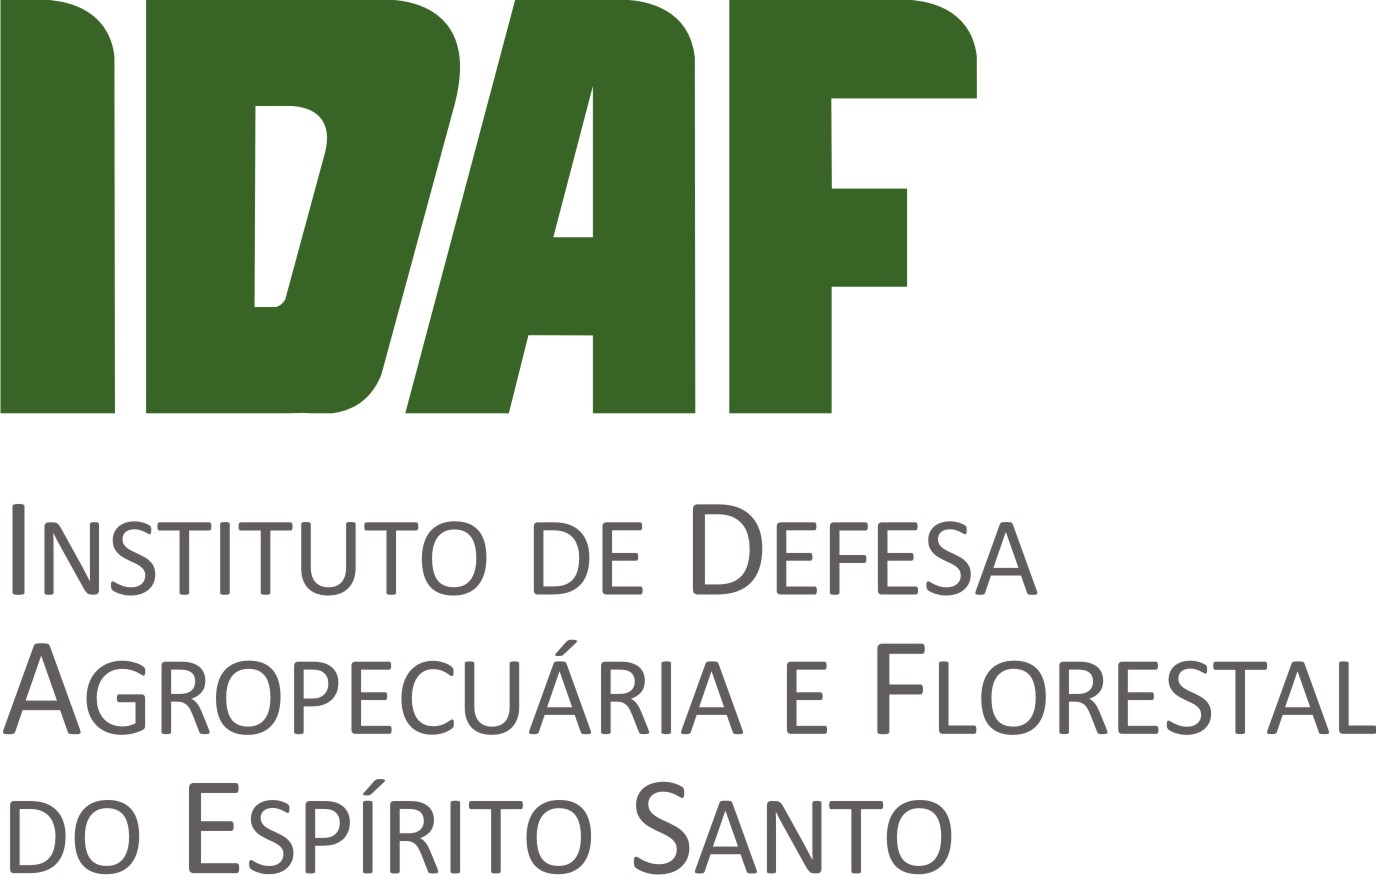 Instituto de Defesa Agropecuária e Florestal do Espírito Santo (Idaf)